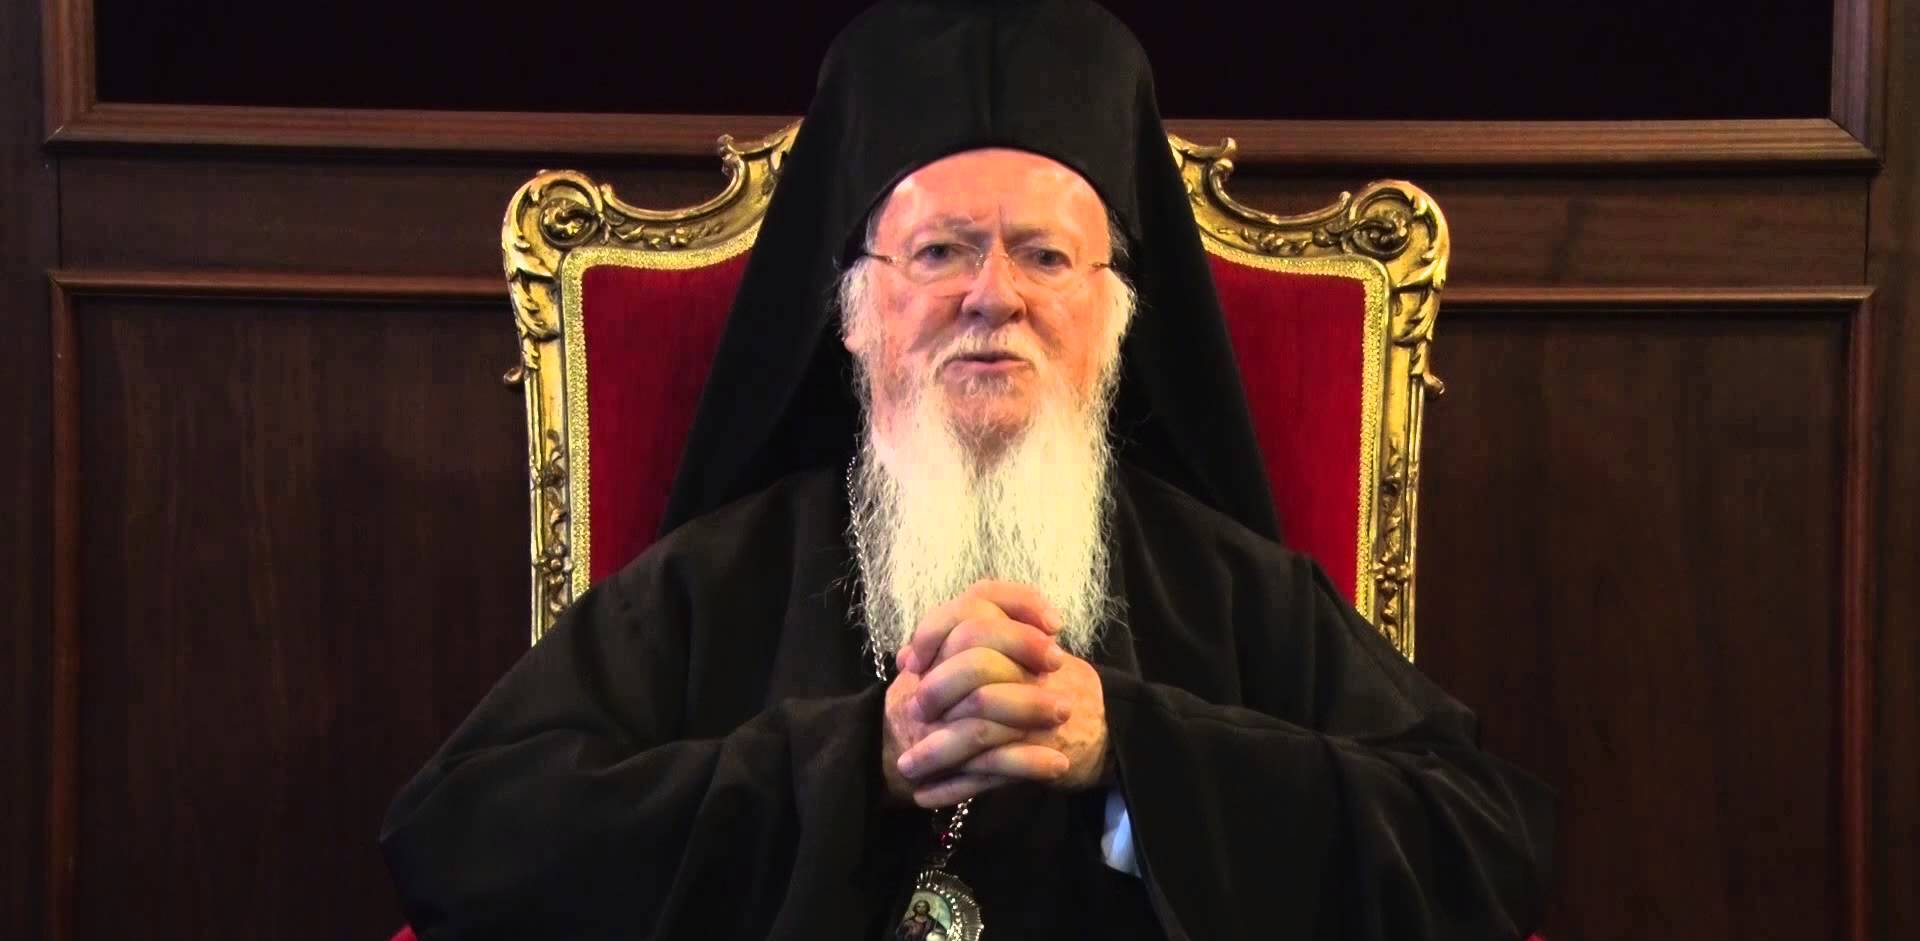 Μήνυμα ελπίδας από τον Οικουμενικό Πατριάρχη για τη φλεγόμενη Ζάκυνθο